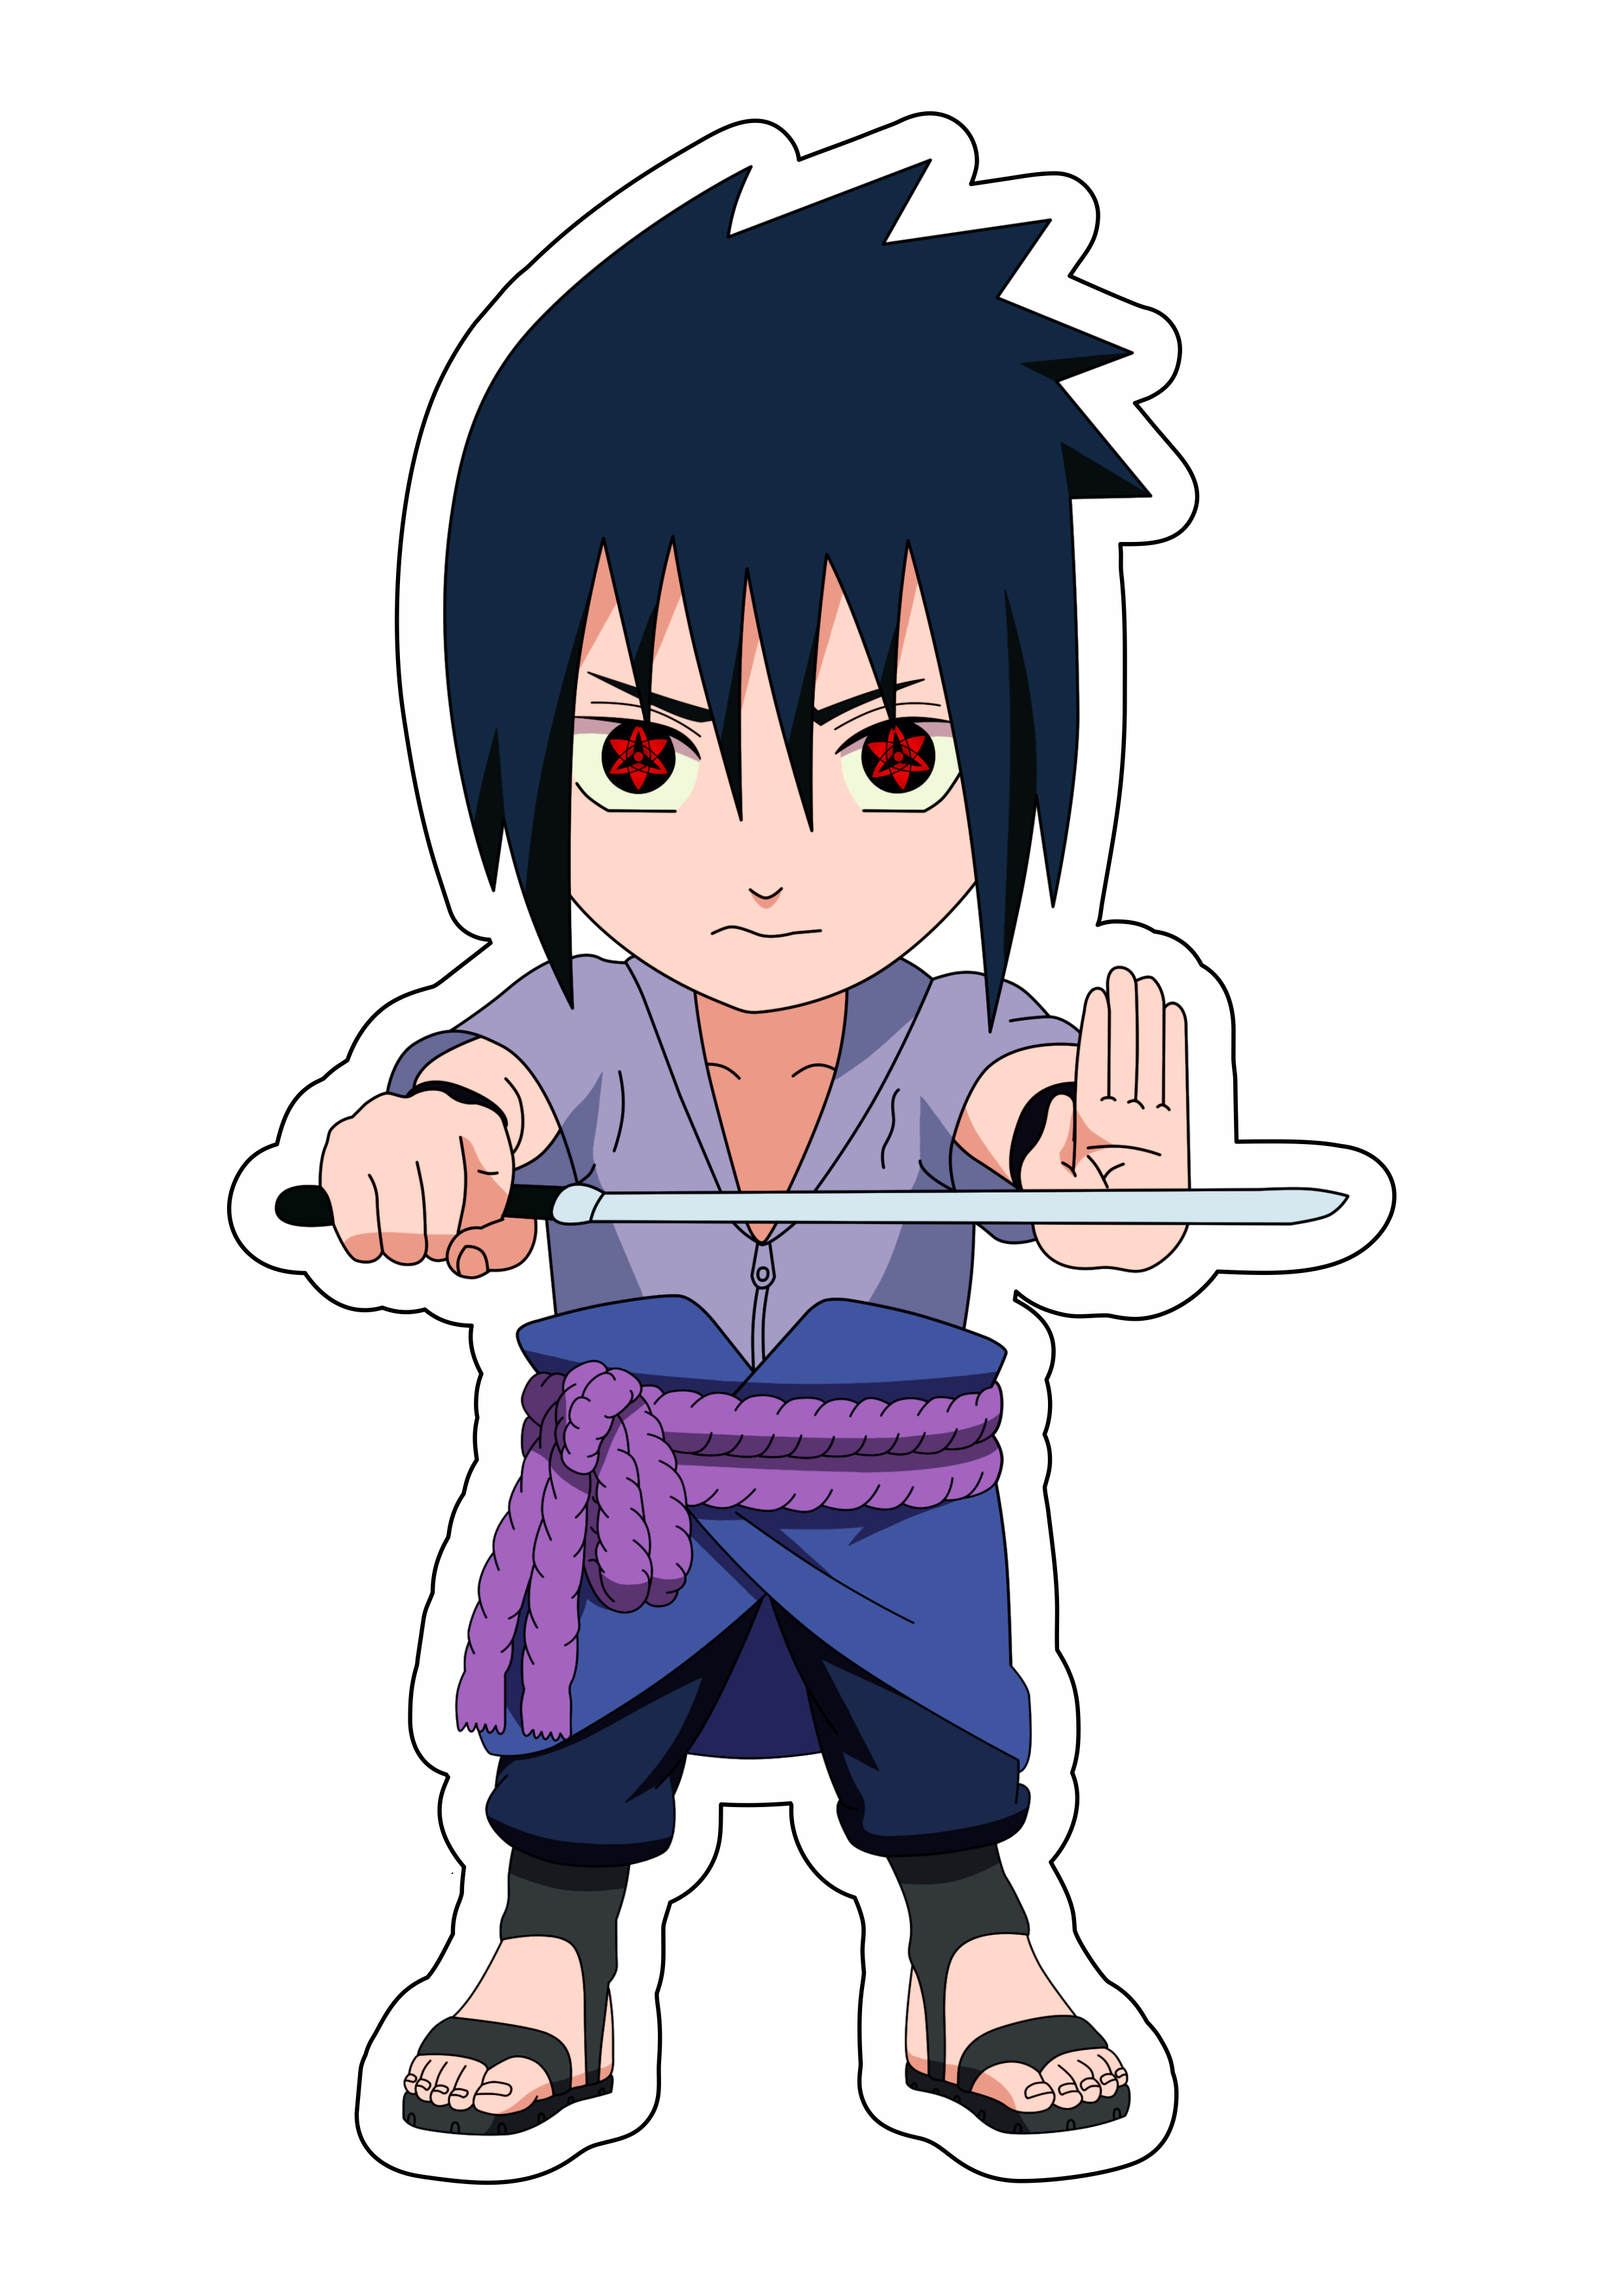 Naruto Shippuden cute chibi Sasuke com espada Sharingam ninja vila oculta da folha desenho infantil anime artes gráficas design png